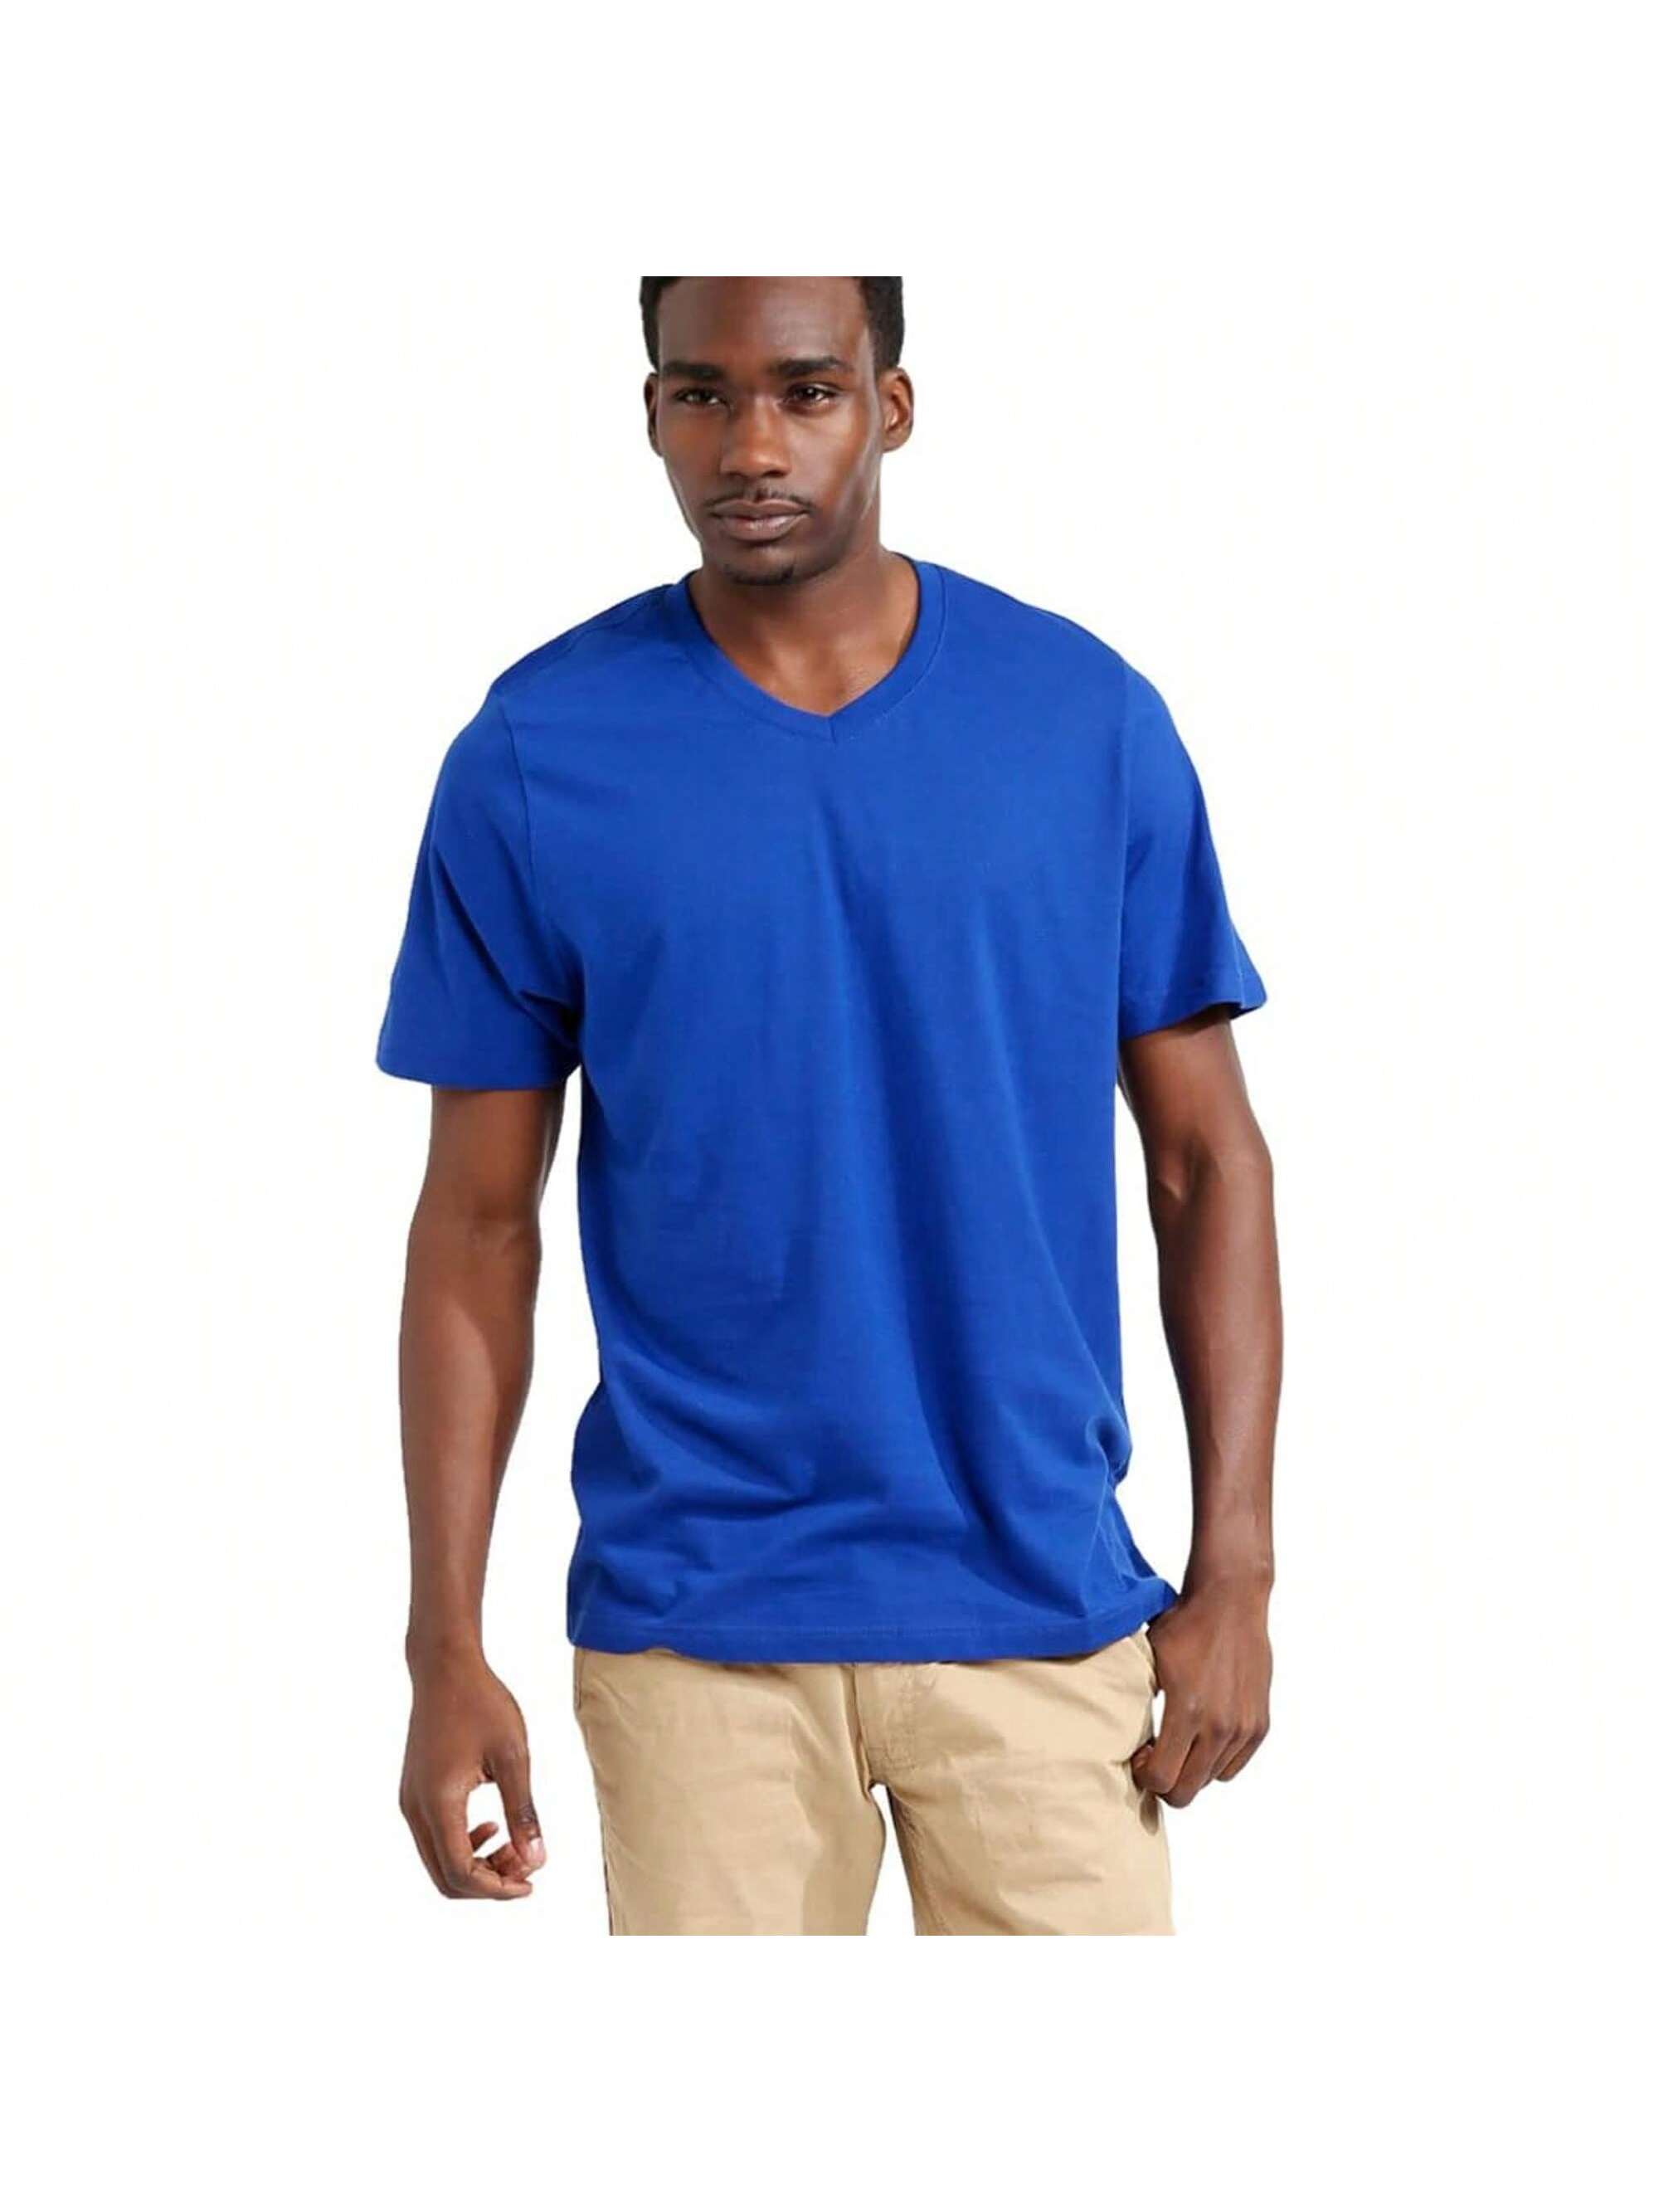 Мужская хлопковая футболка премиум-класса с v-образным вырезом Rich Cotton BLK-M, королевский